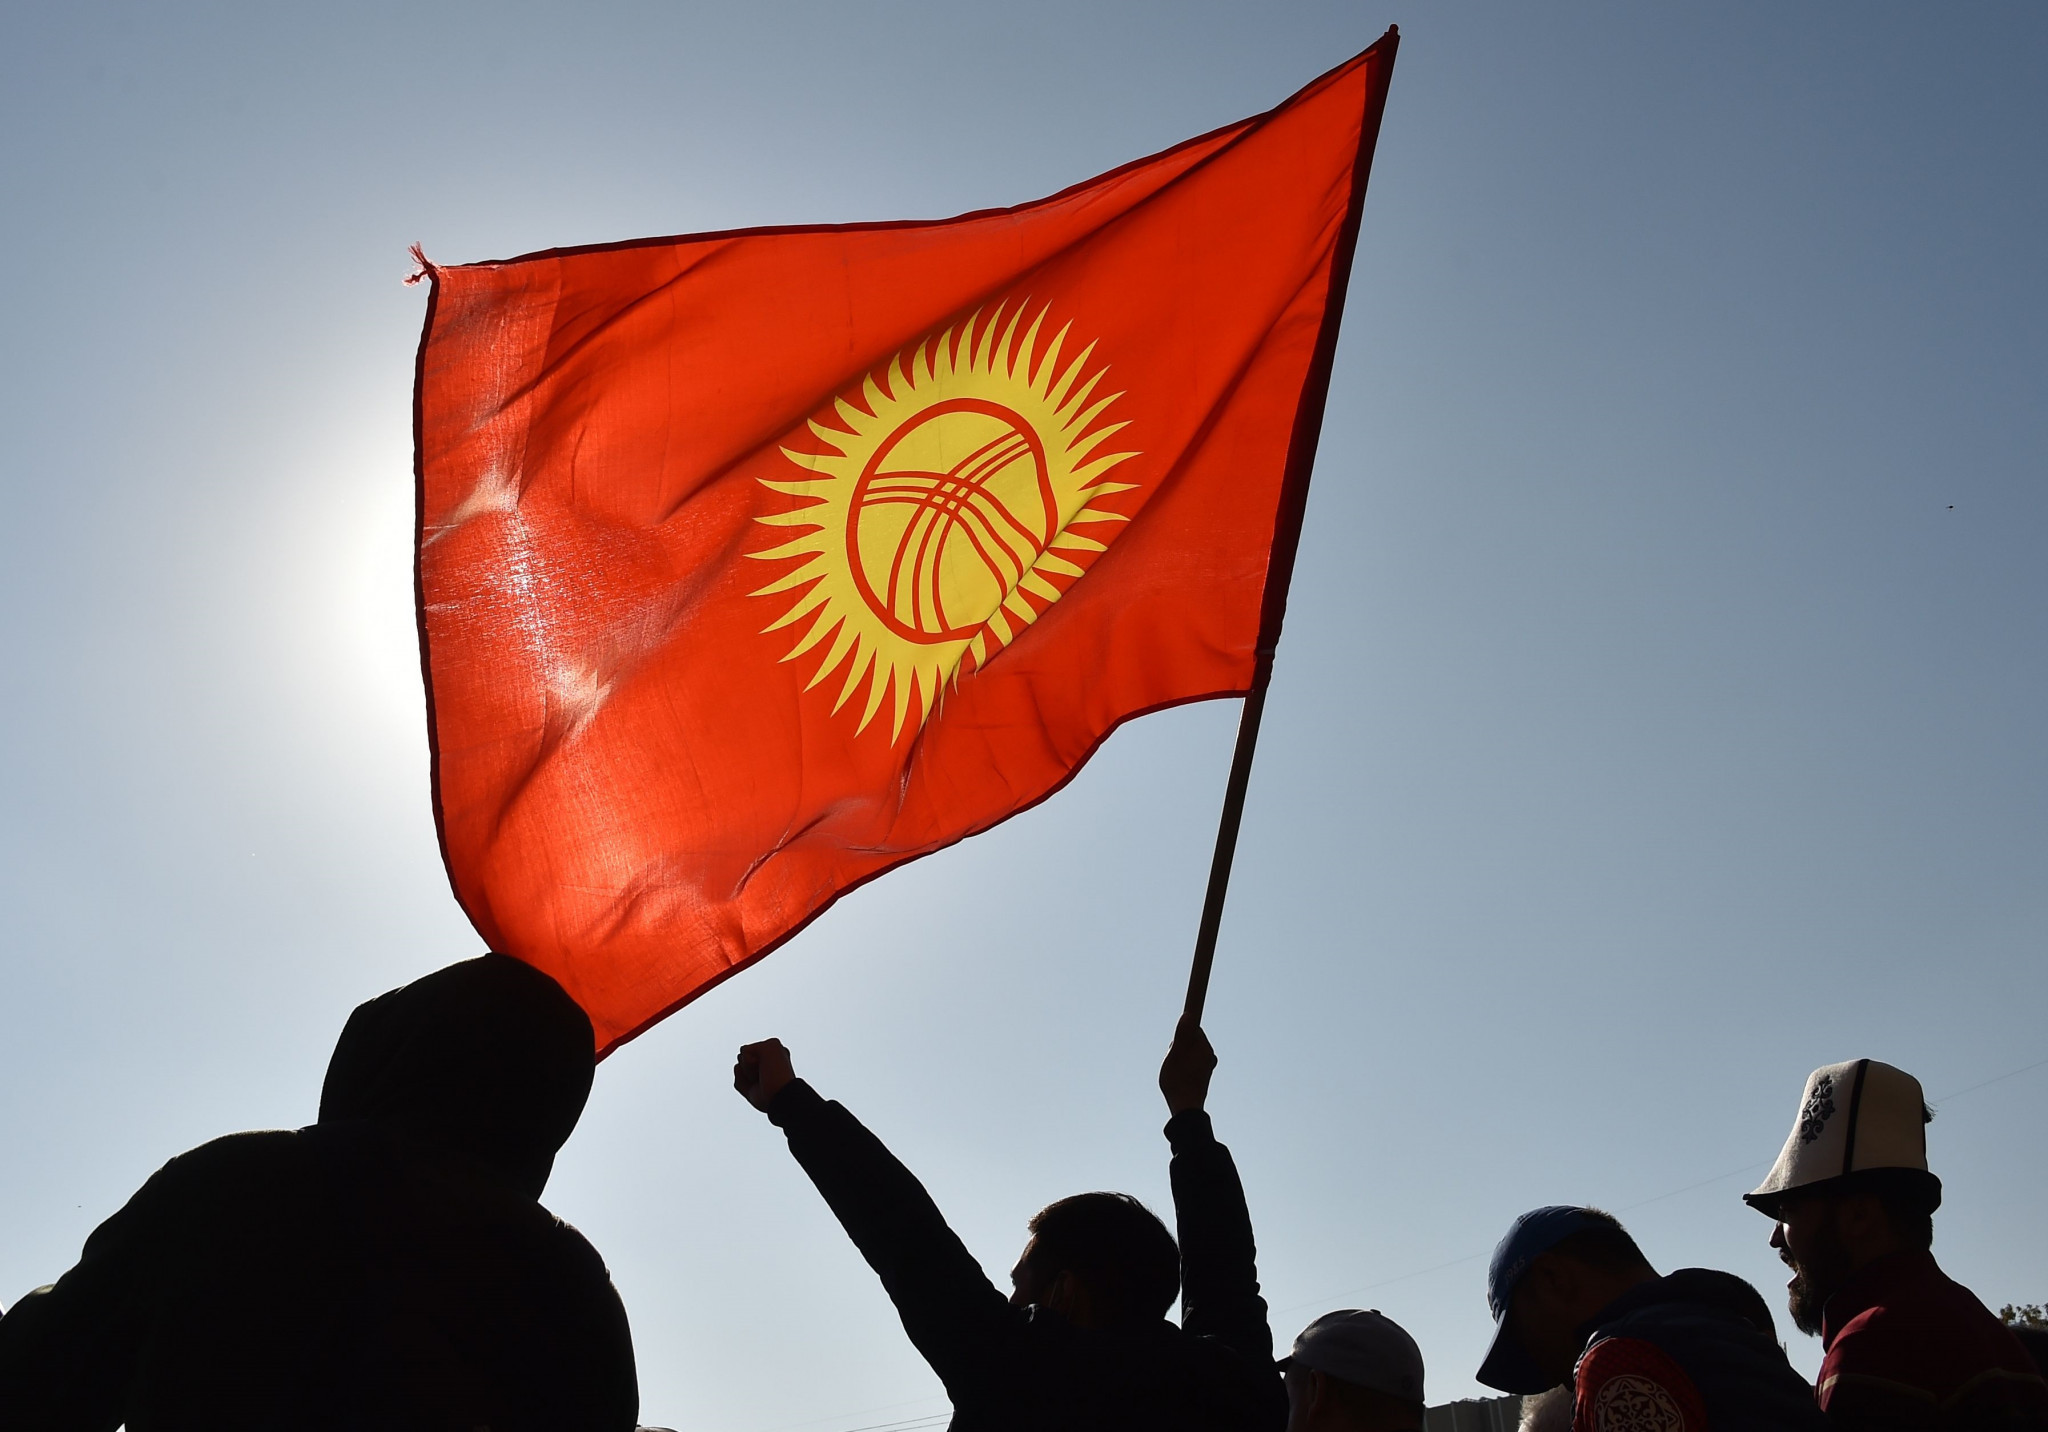 Yarının Kırgızistan’ı Nasıl Olacak